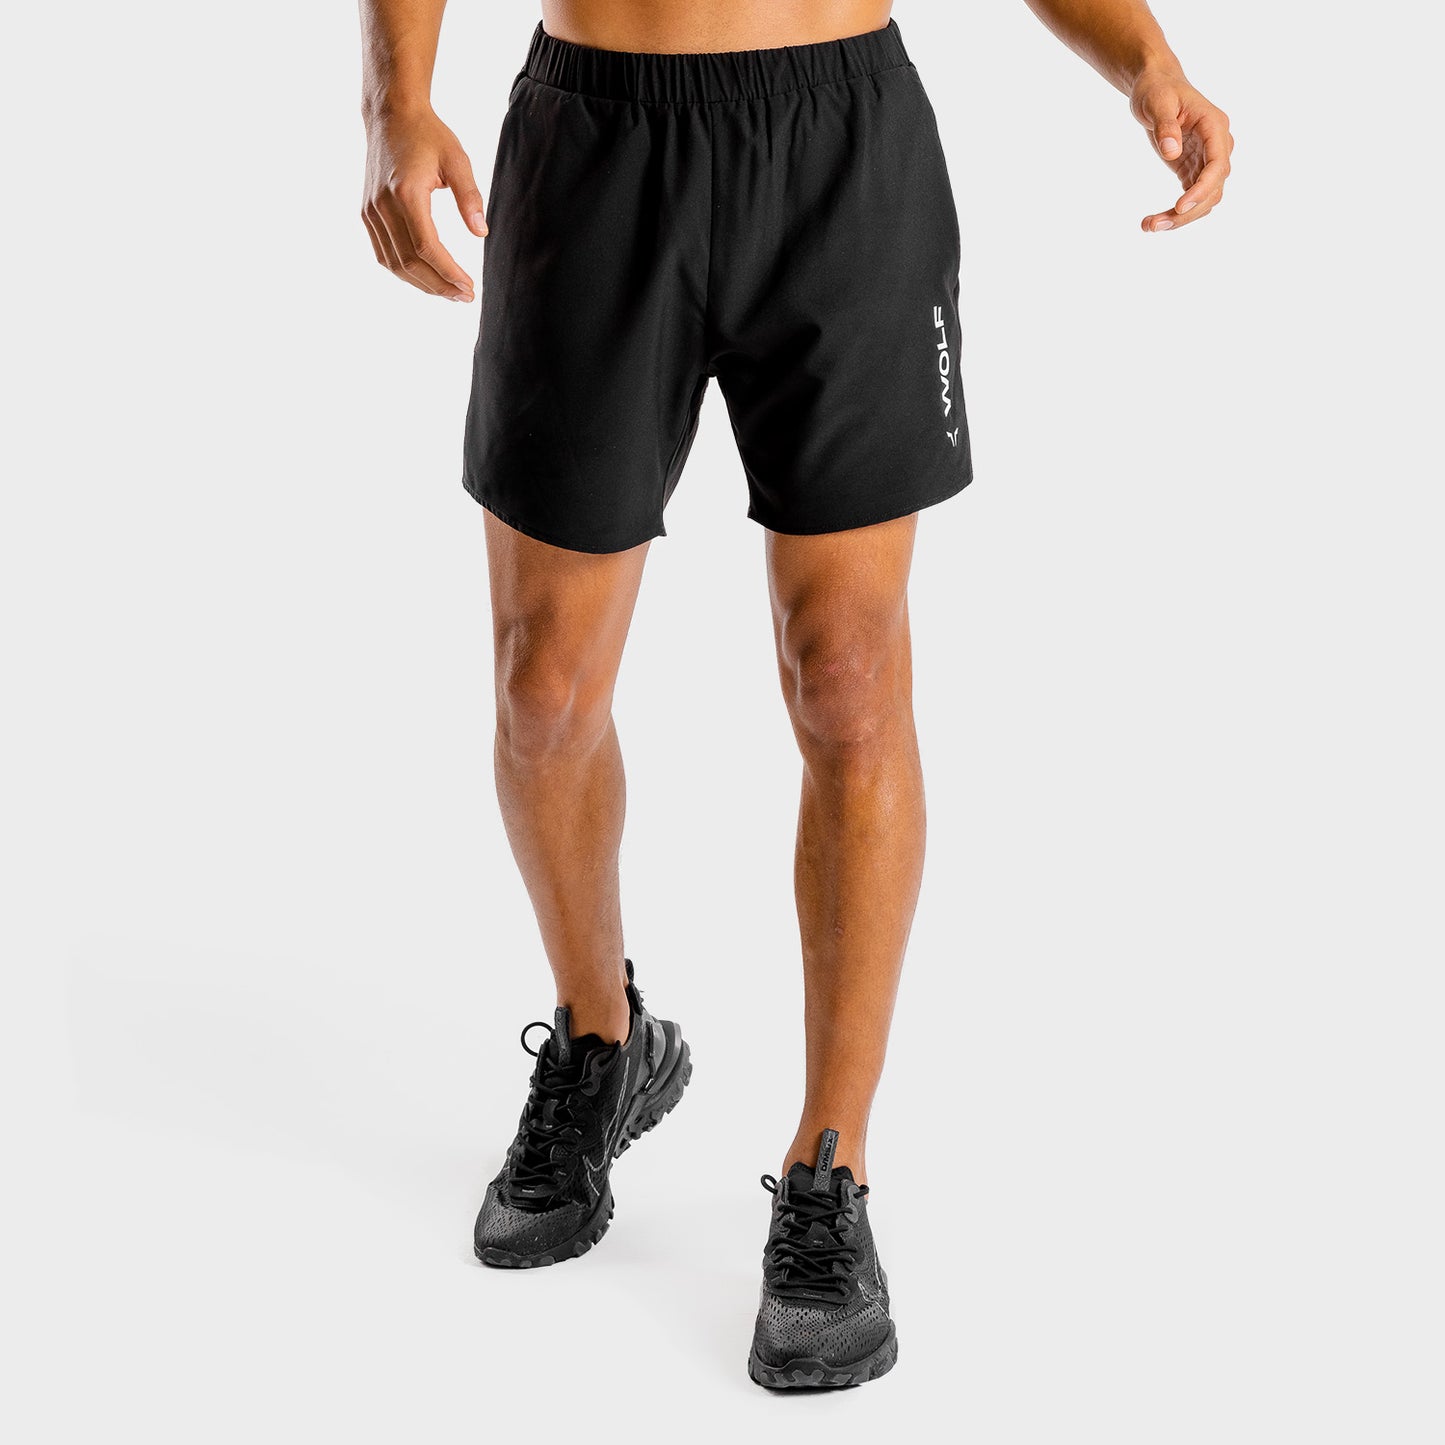 squatwolf-workout-short-for-men-primal-shorts-black-gym-wear